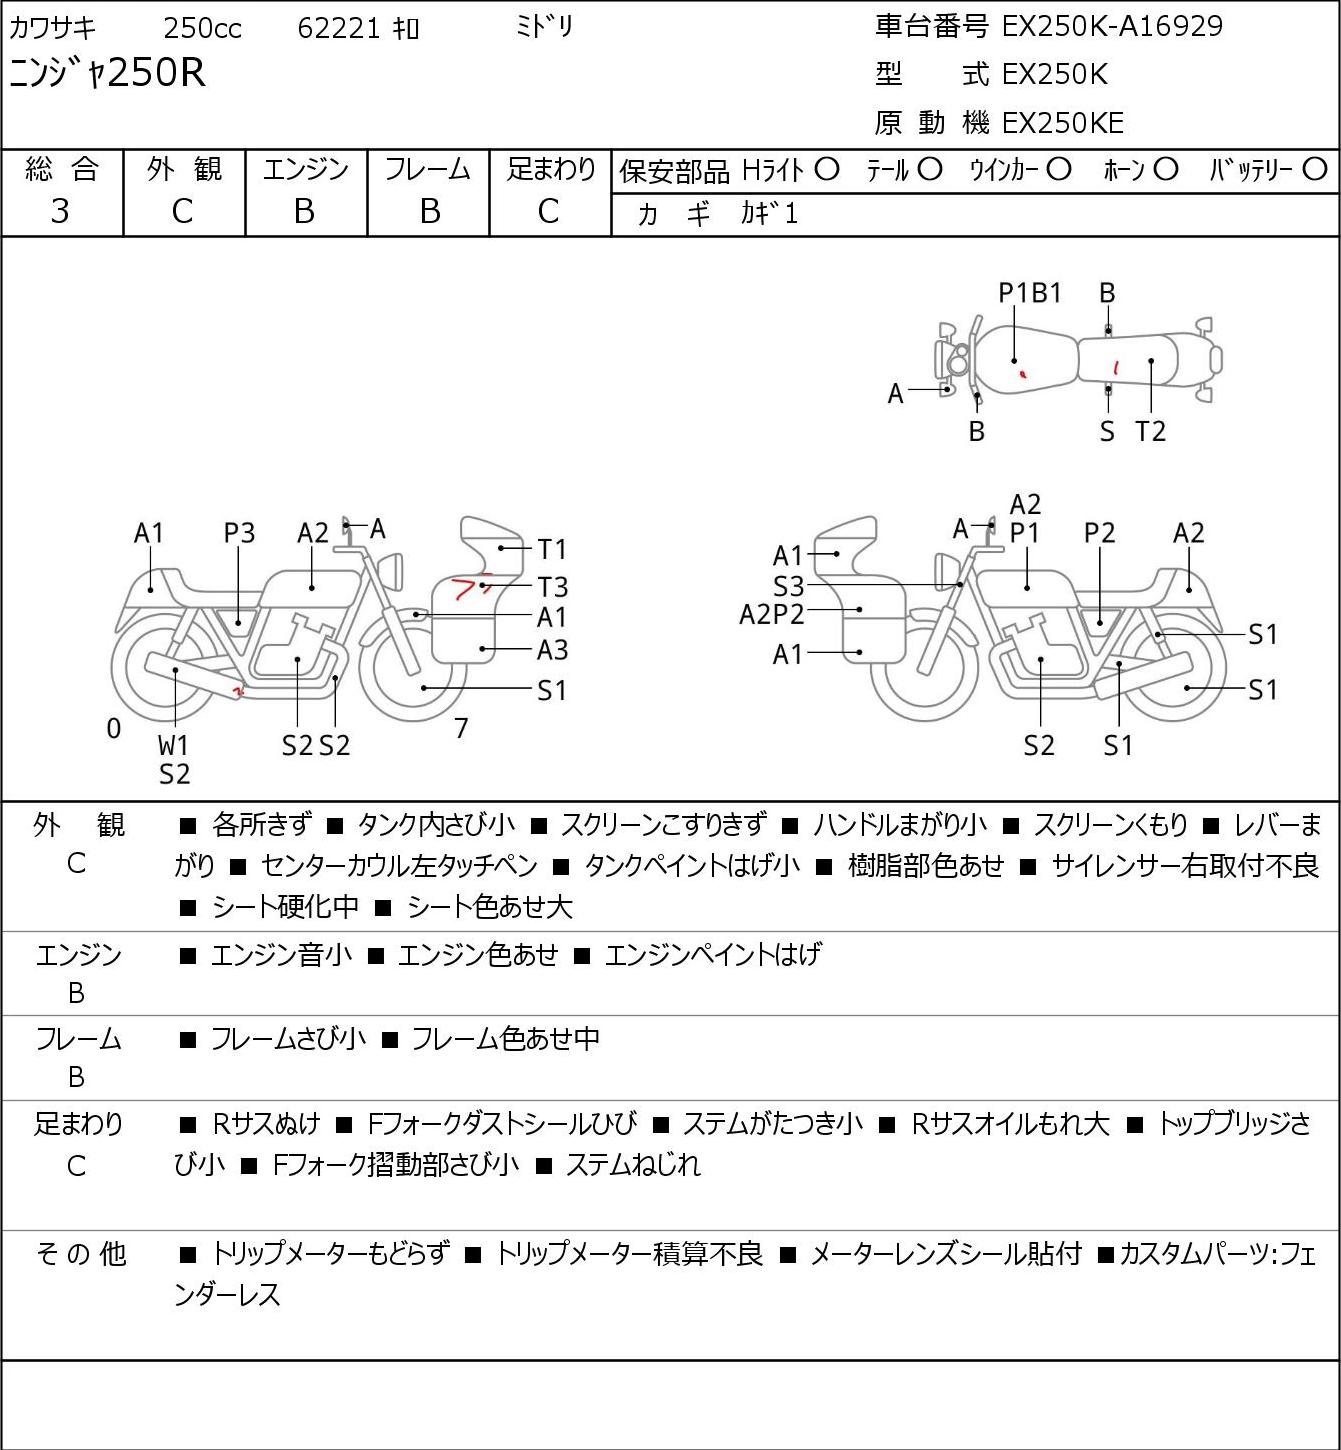 Kawasaki NINJA 250 R EX250K г. 62221